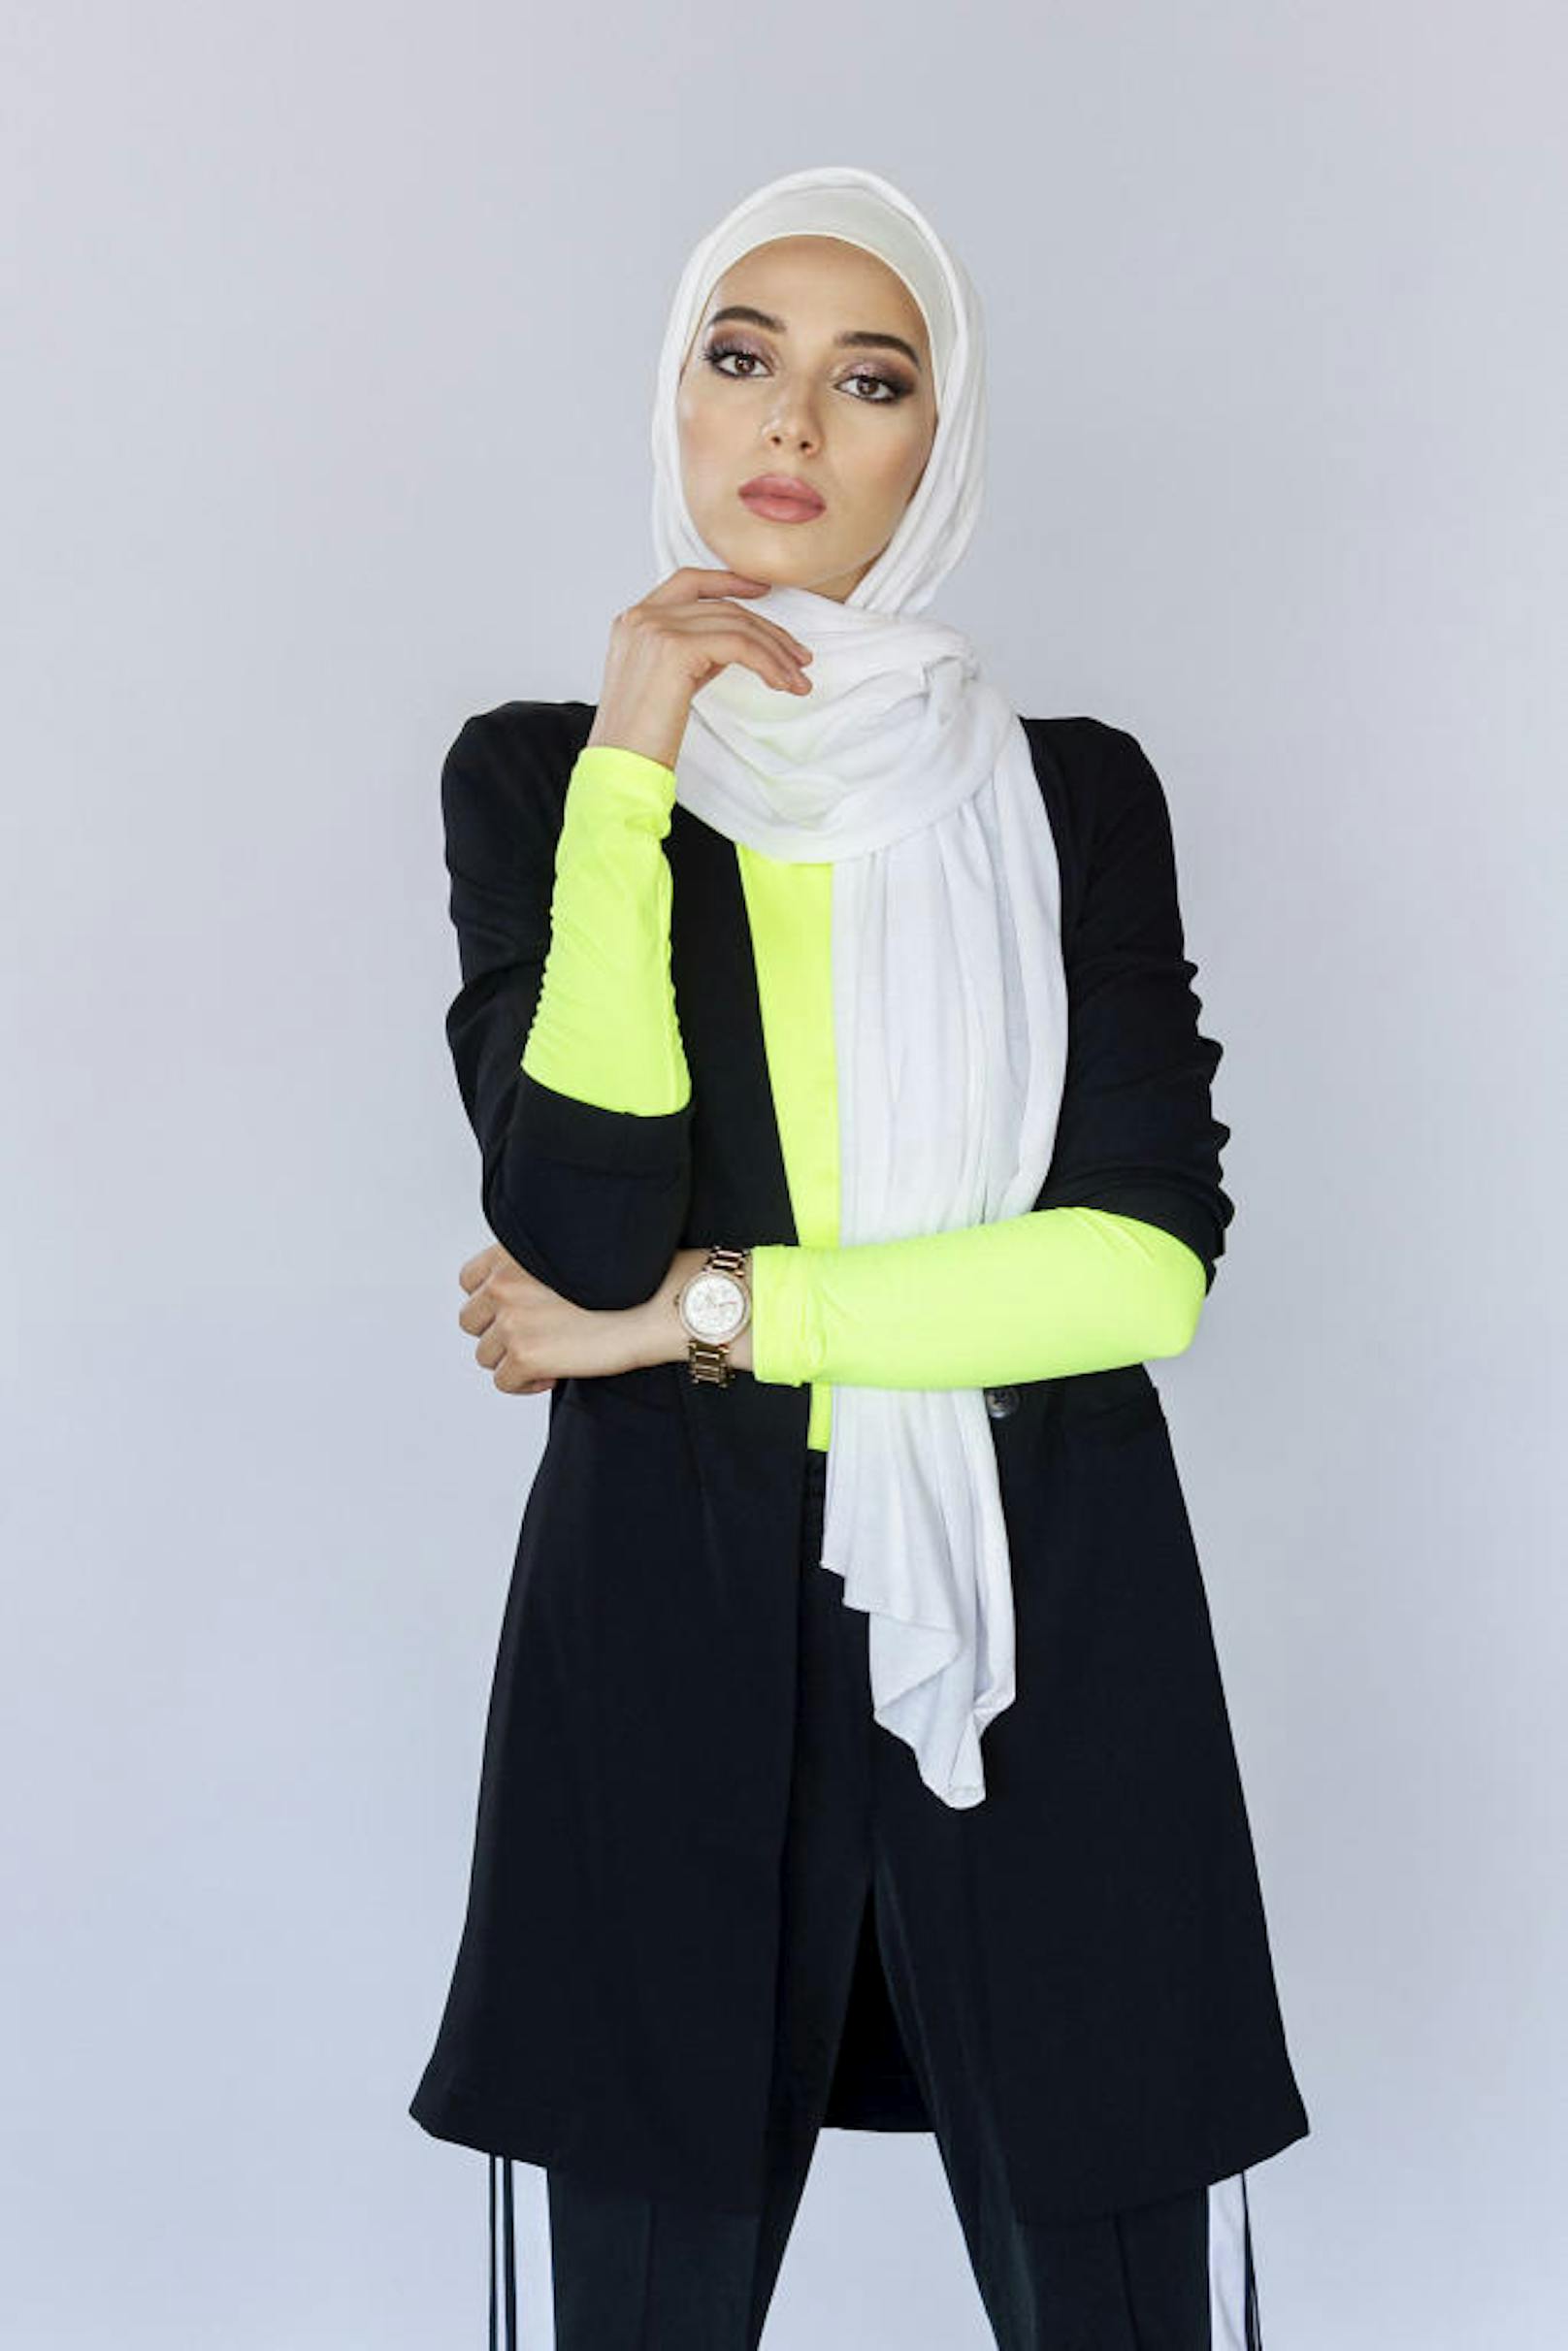 Sorgte für tolle Einschaltquote: Baraa (24) ist die erste ANTM-Kandidatin, die ein muslimischen Hidschab trägt.